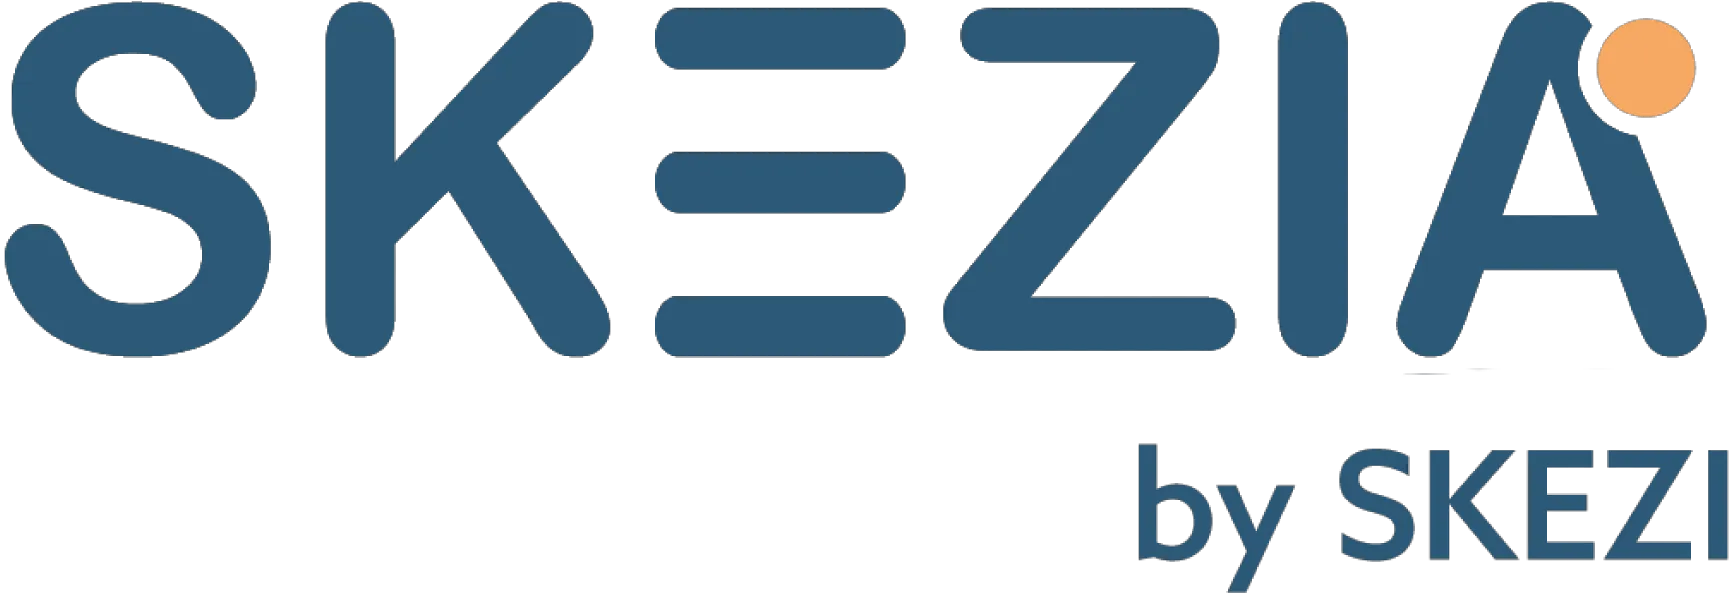 logo SKEZIA by SKEZI